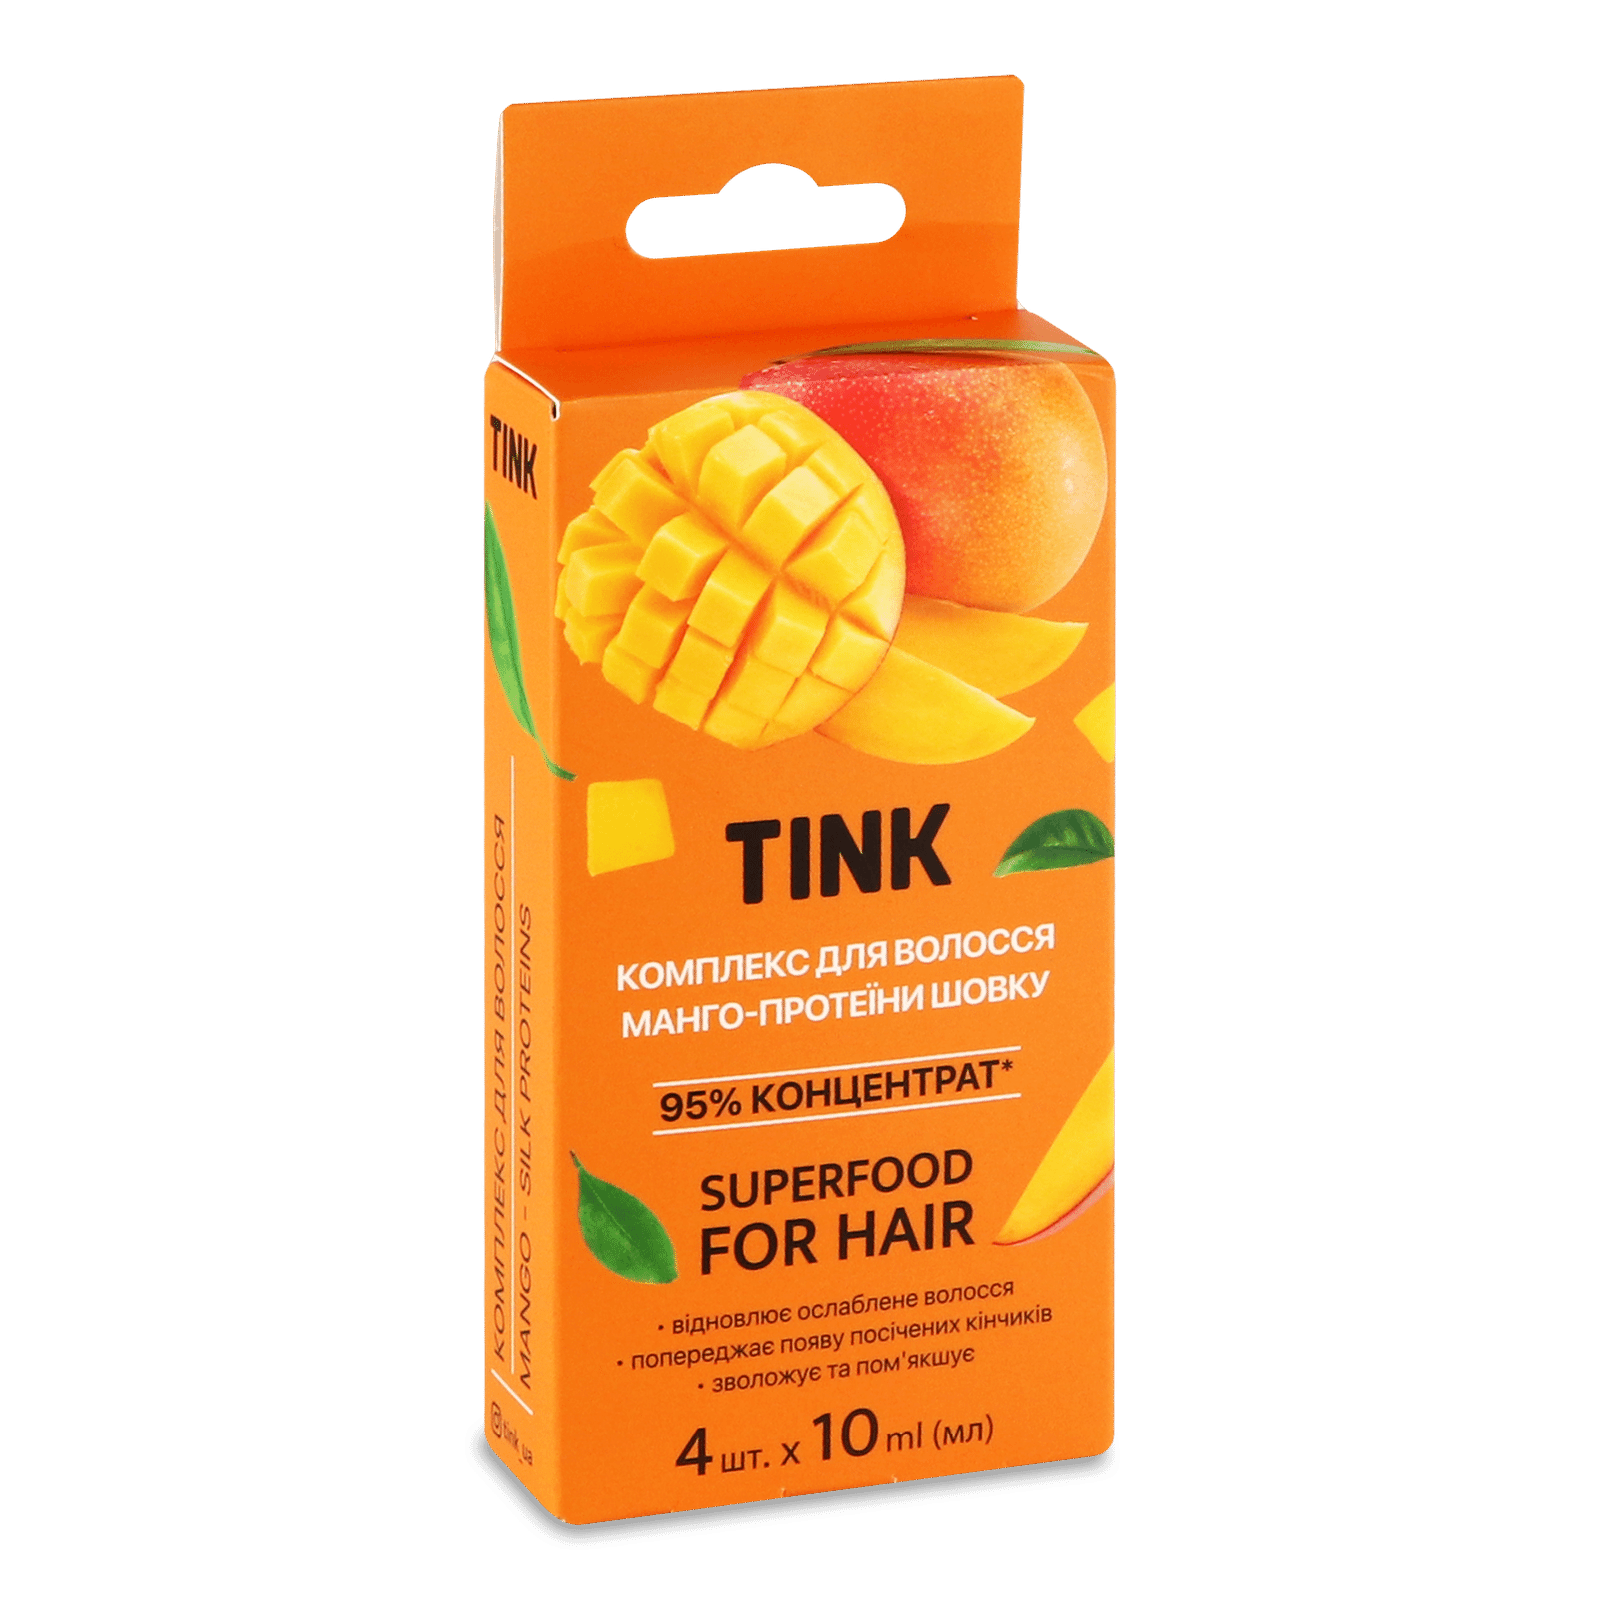 Комплекс для волосся Tink манго-протеїни шовку - 1